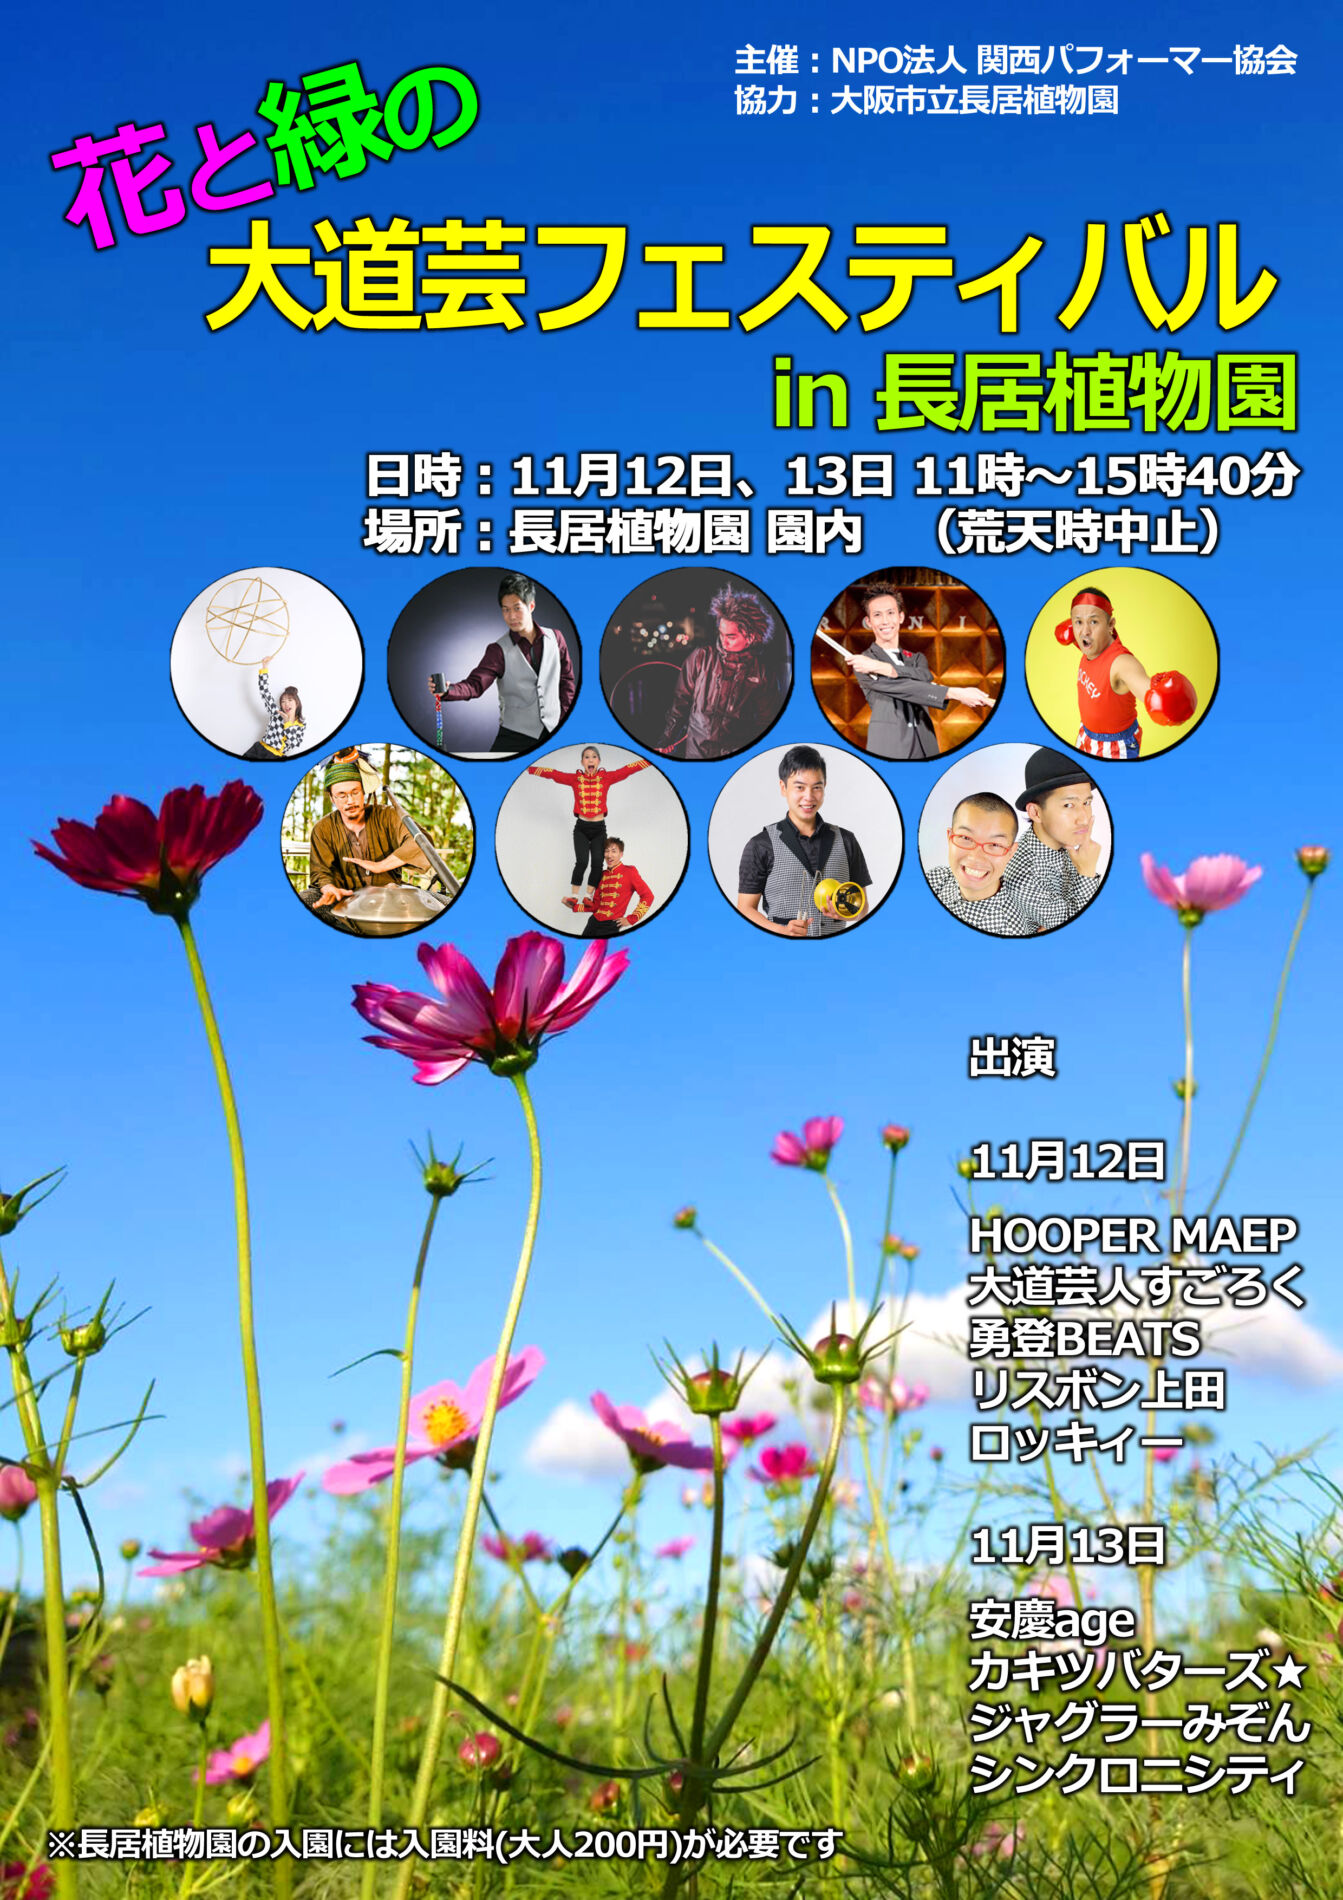 花と緑の大道芸フェスティバル In 長居植物園 イベント情報 大阪市立長居植物園